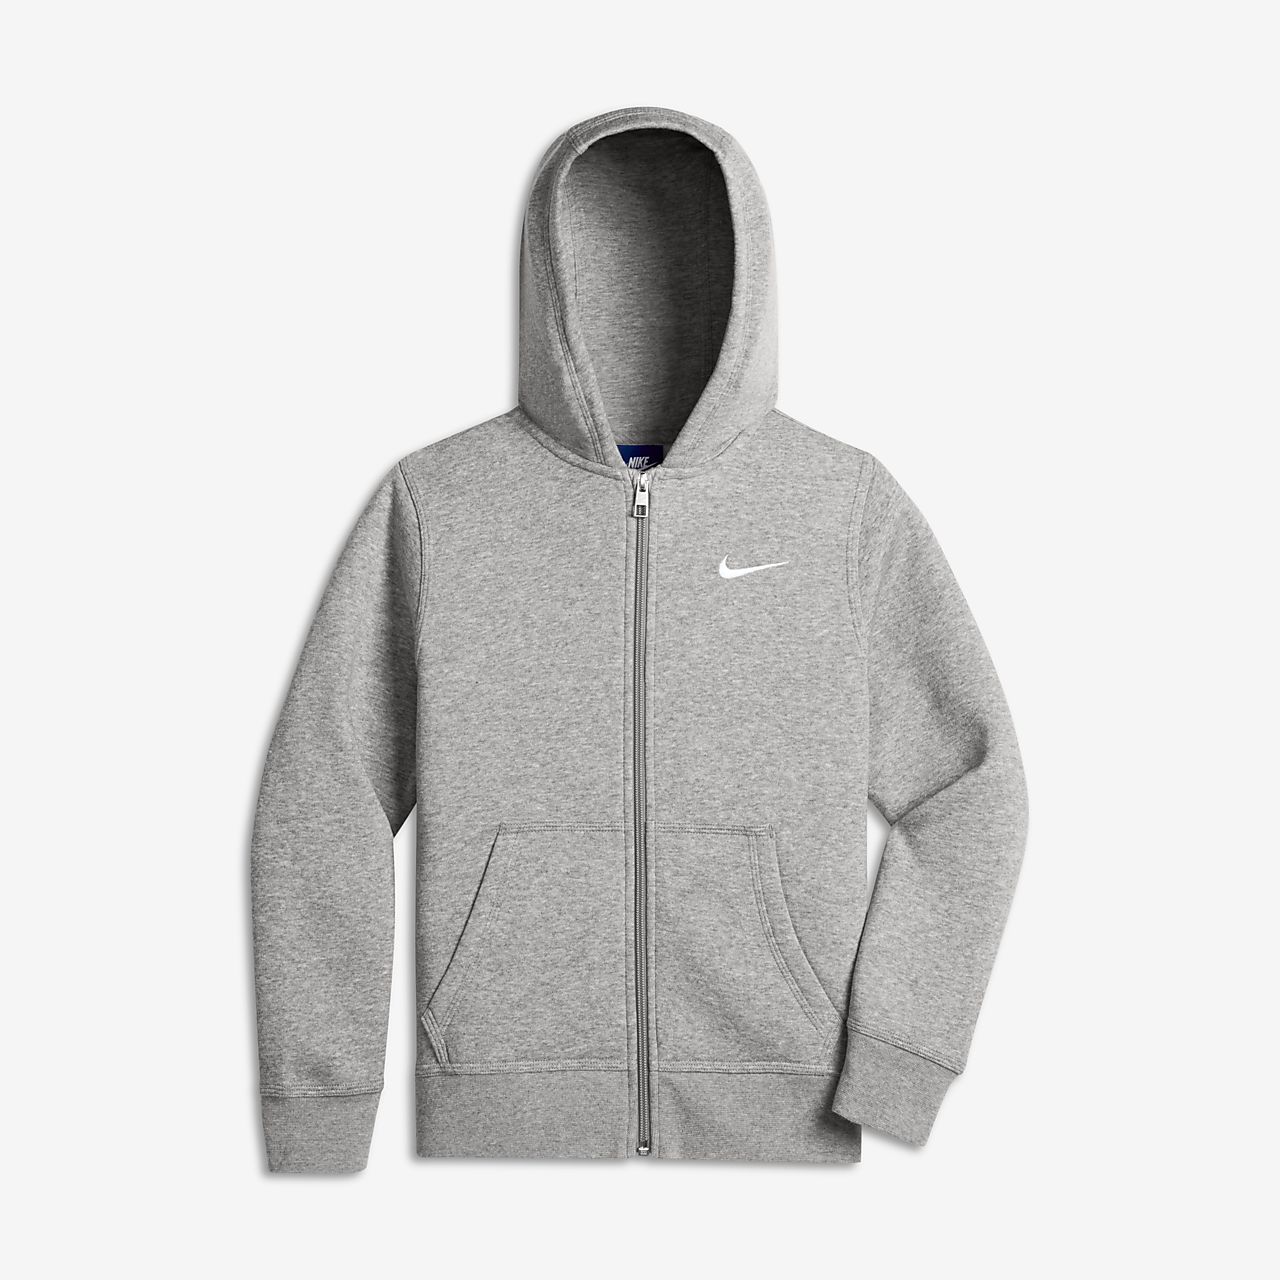 grey nike hoodie zip